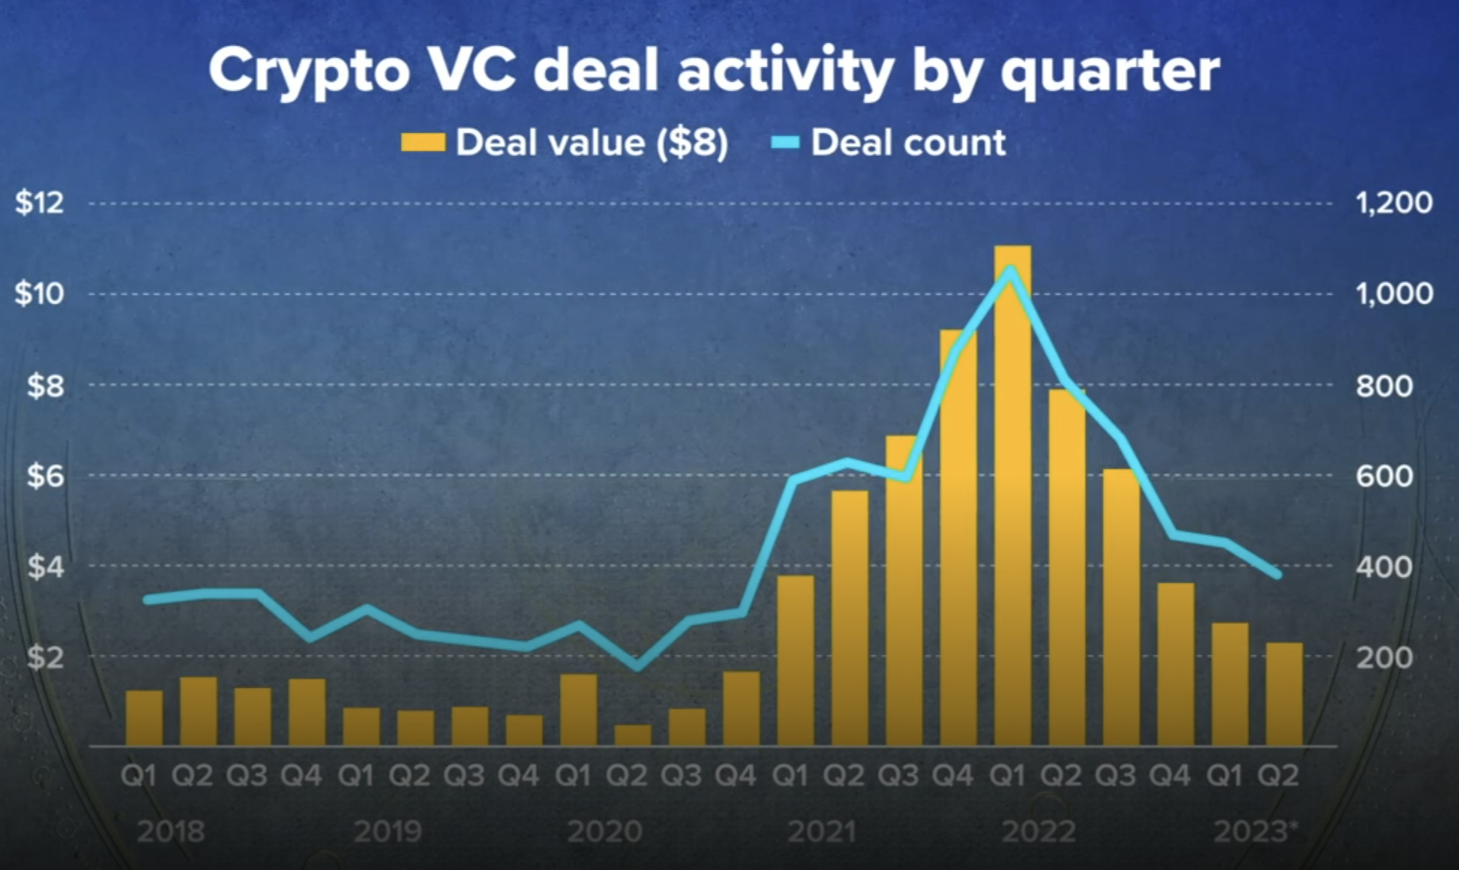 Spadek aktywności Crypto VC w drugim kwartale 2 r. – co to oznacza dla branży – The Daily Hodl